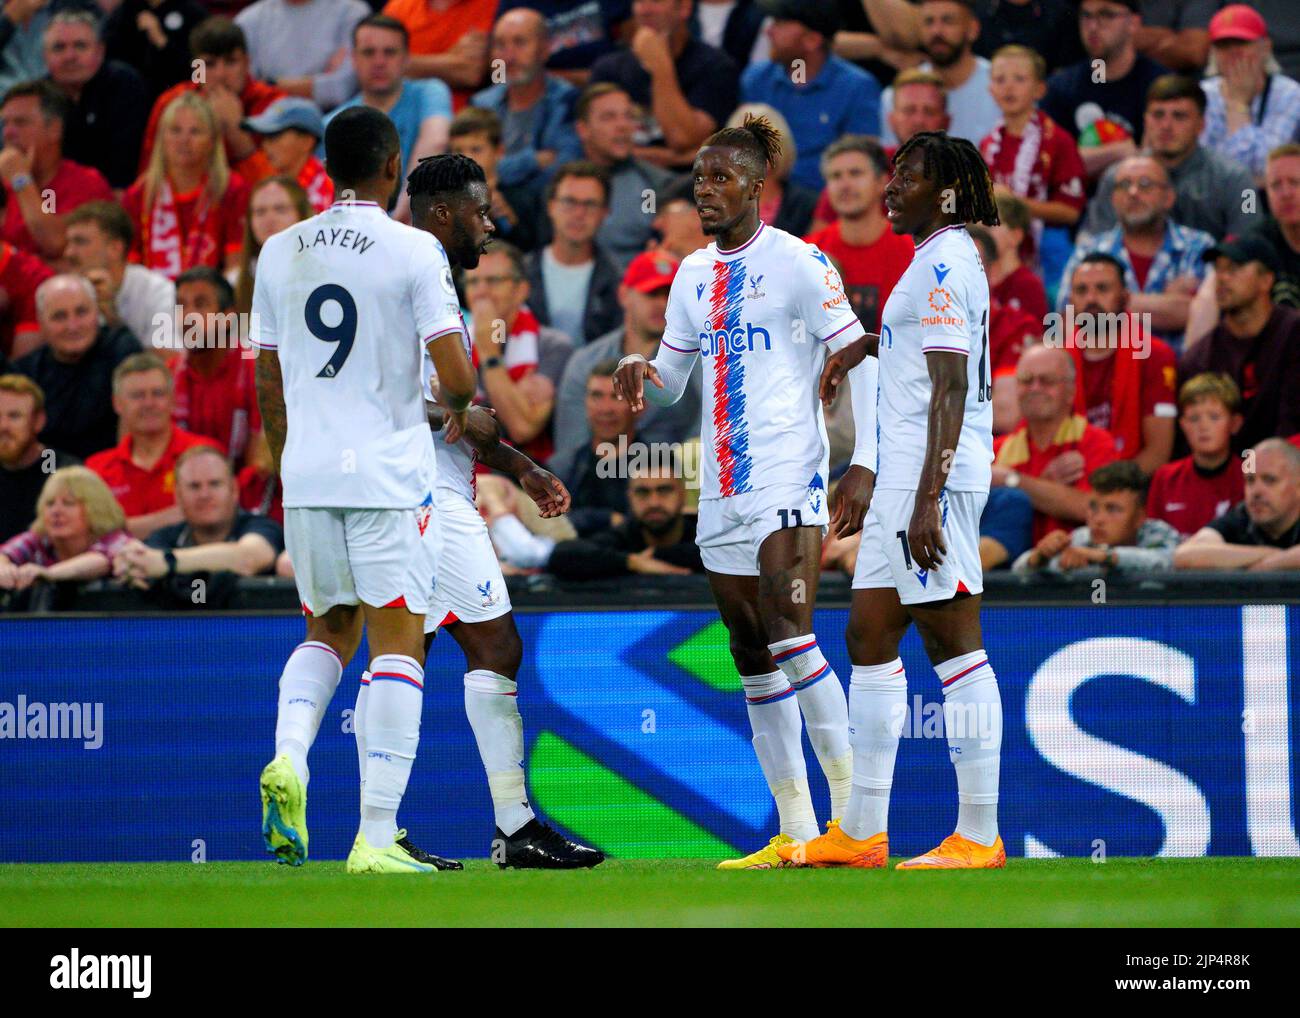 Wilfried Zaha (segunda derecha) de Crystal Palace celebra con sus compañeros de equipo después de marcar el primer gol de su equipo durante el partido de la Premier League en Anfield, Liverpool. Fecha de la foto: Lunes 15 de agosto de 2022. Foto de stock